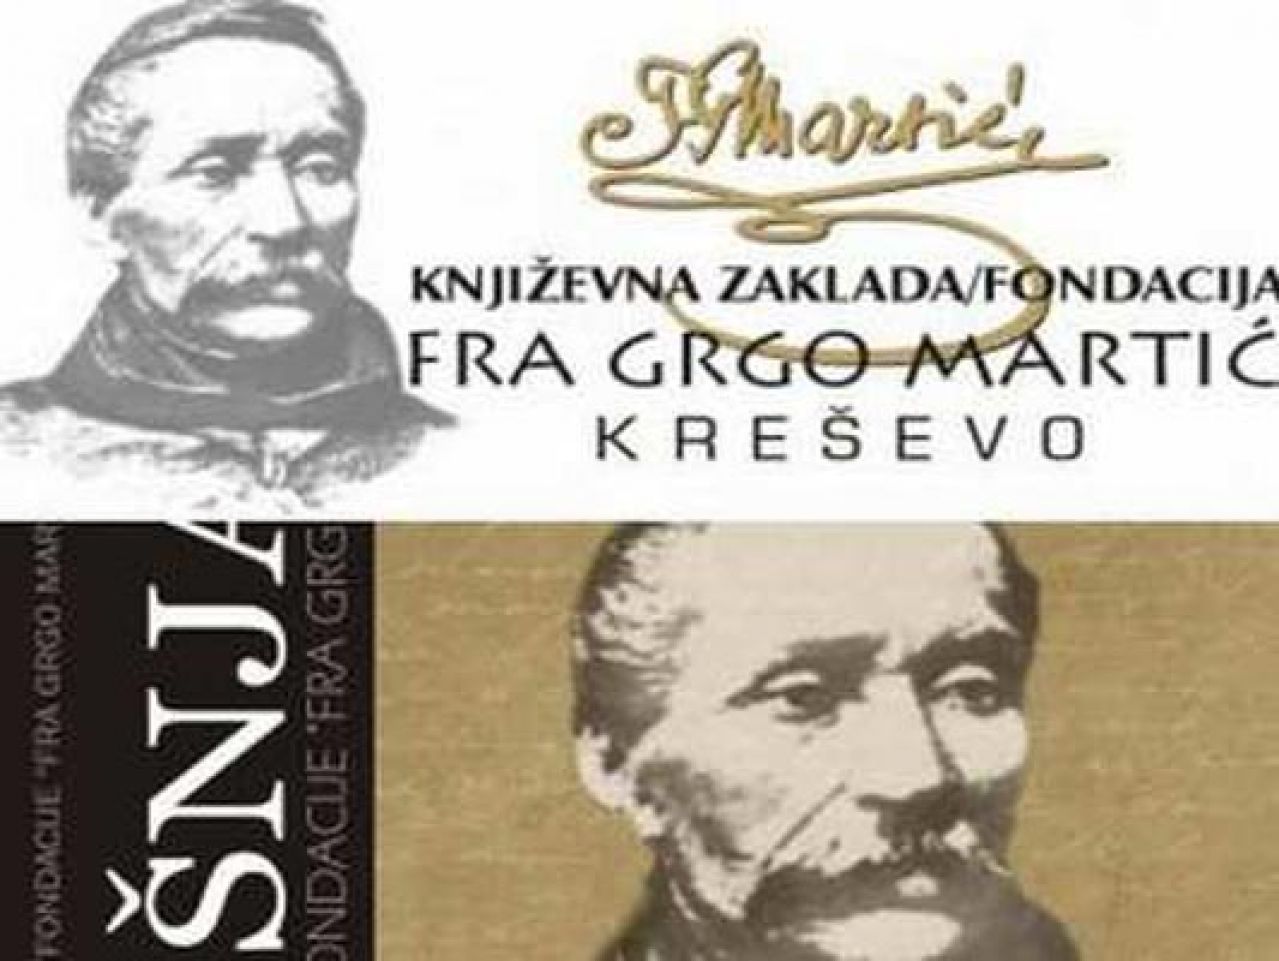 Raspisan natječaj za nagradu Fra Grgo Martić